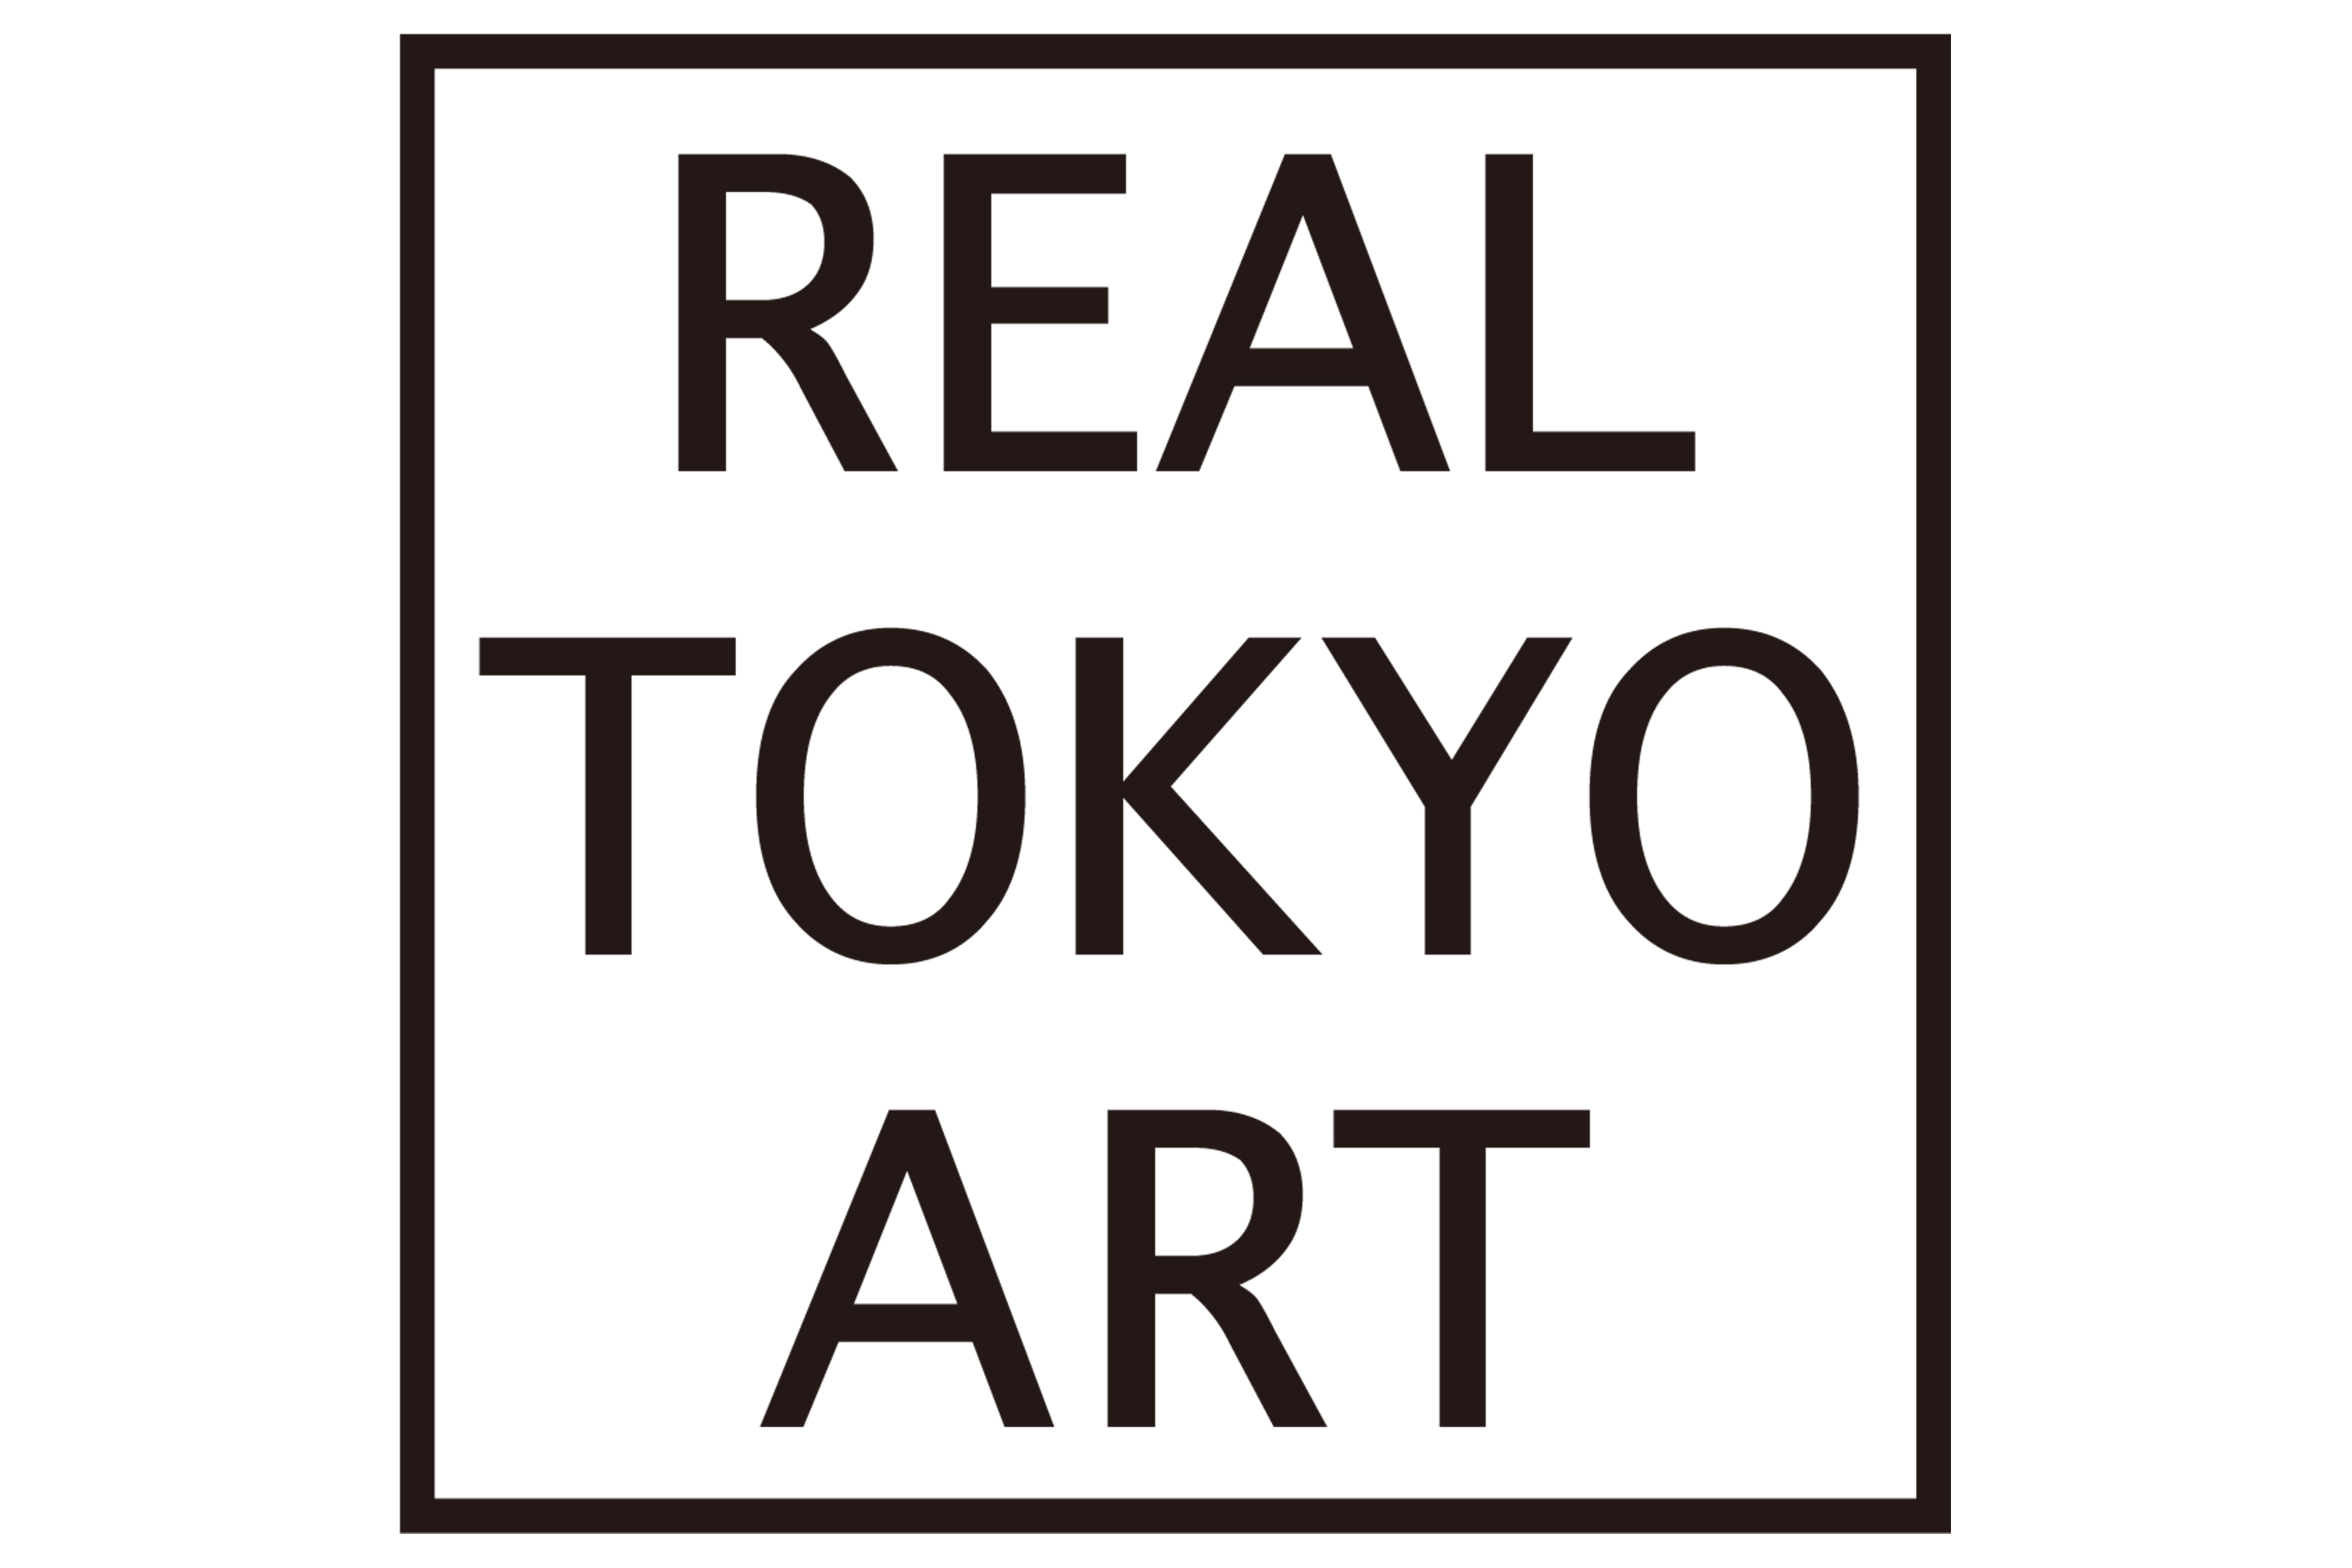 REAL TOKYO ART